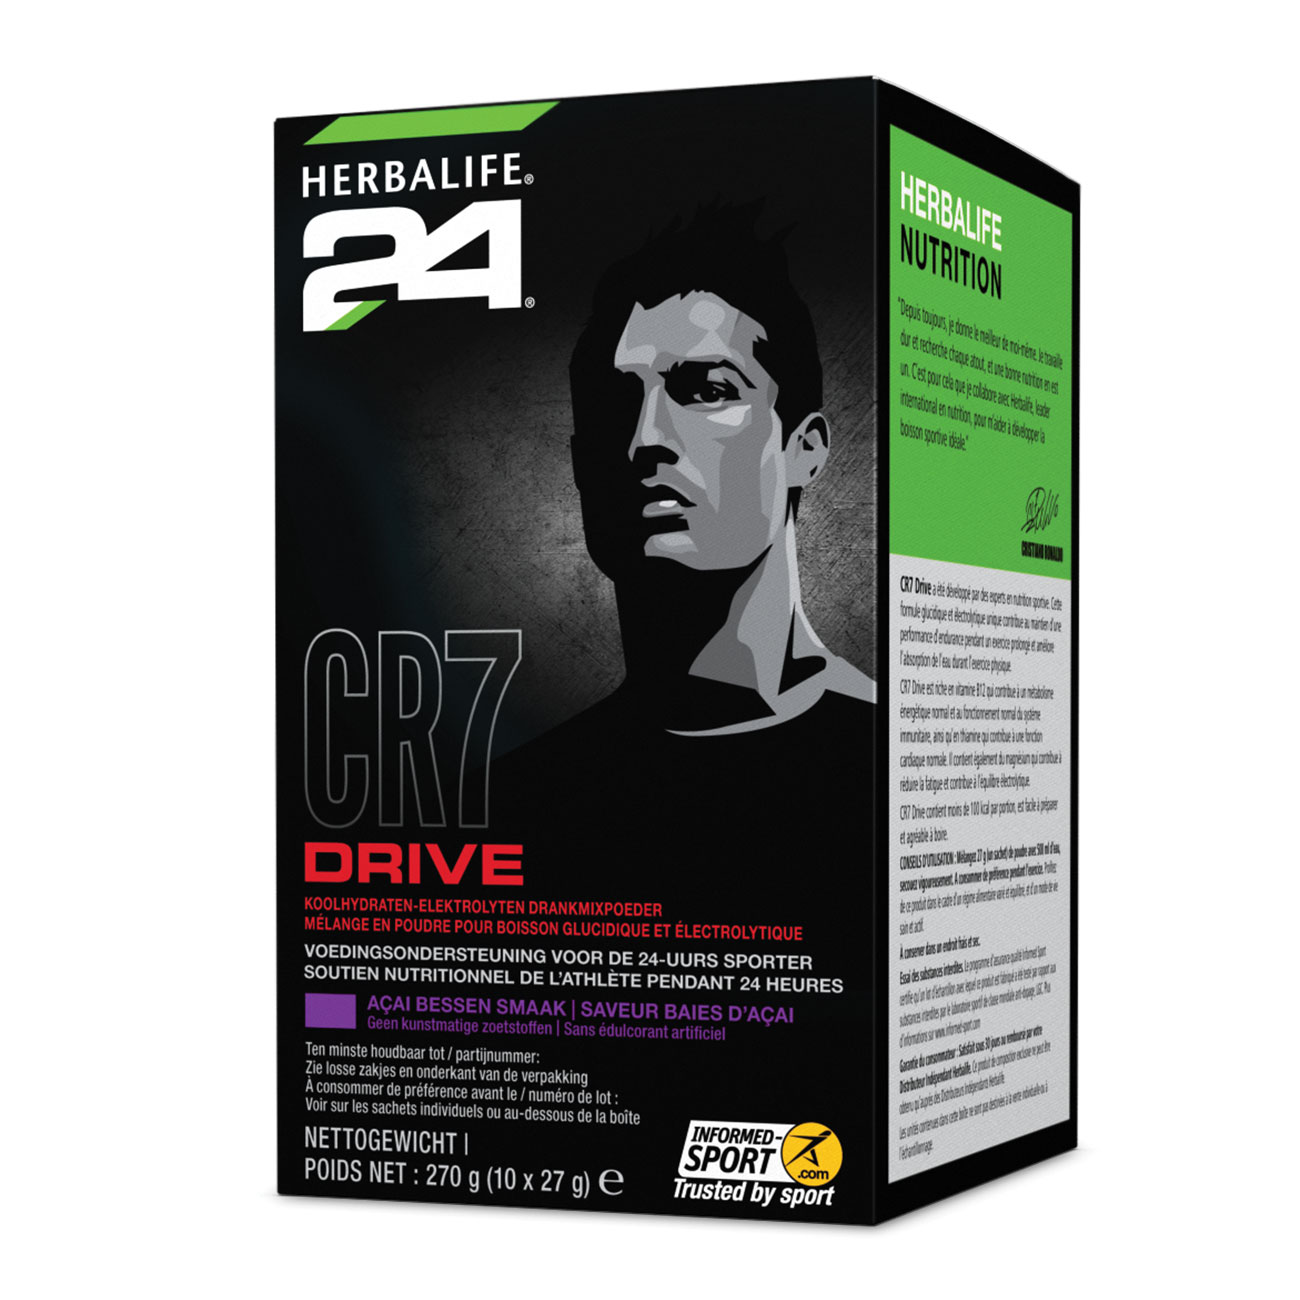 Herbalife24® CR7 Drive Boisson glucidique et électrolytique Baies d'Acai product shot